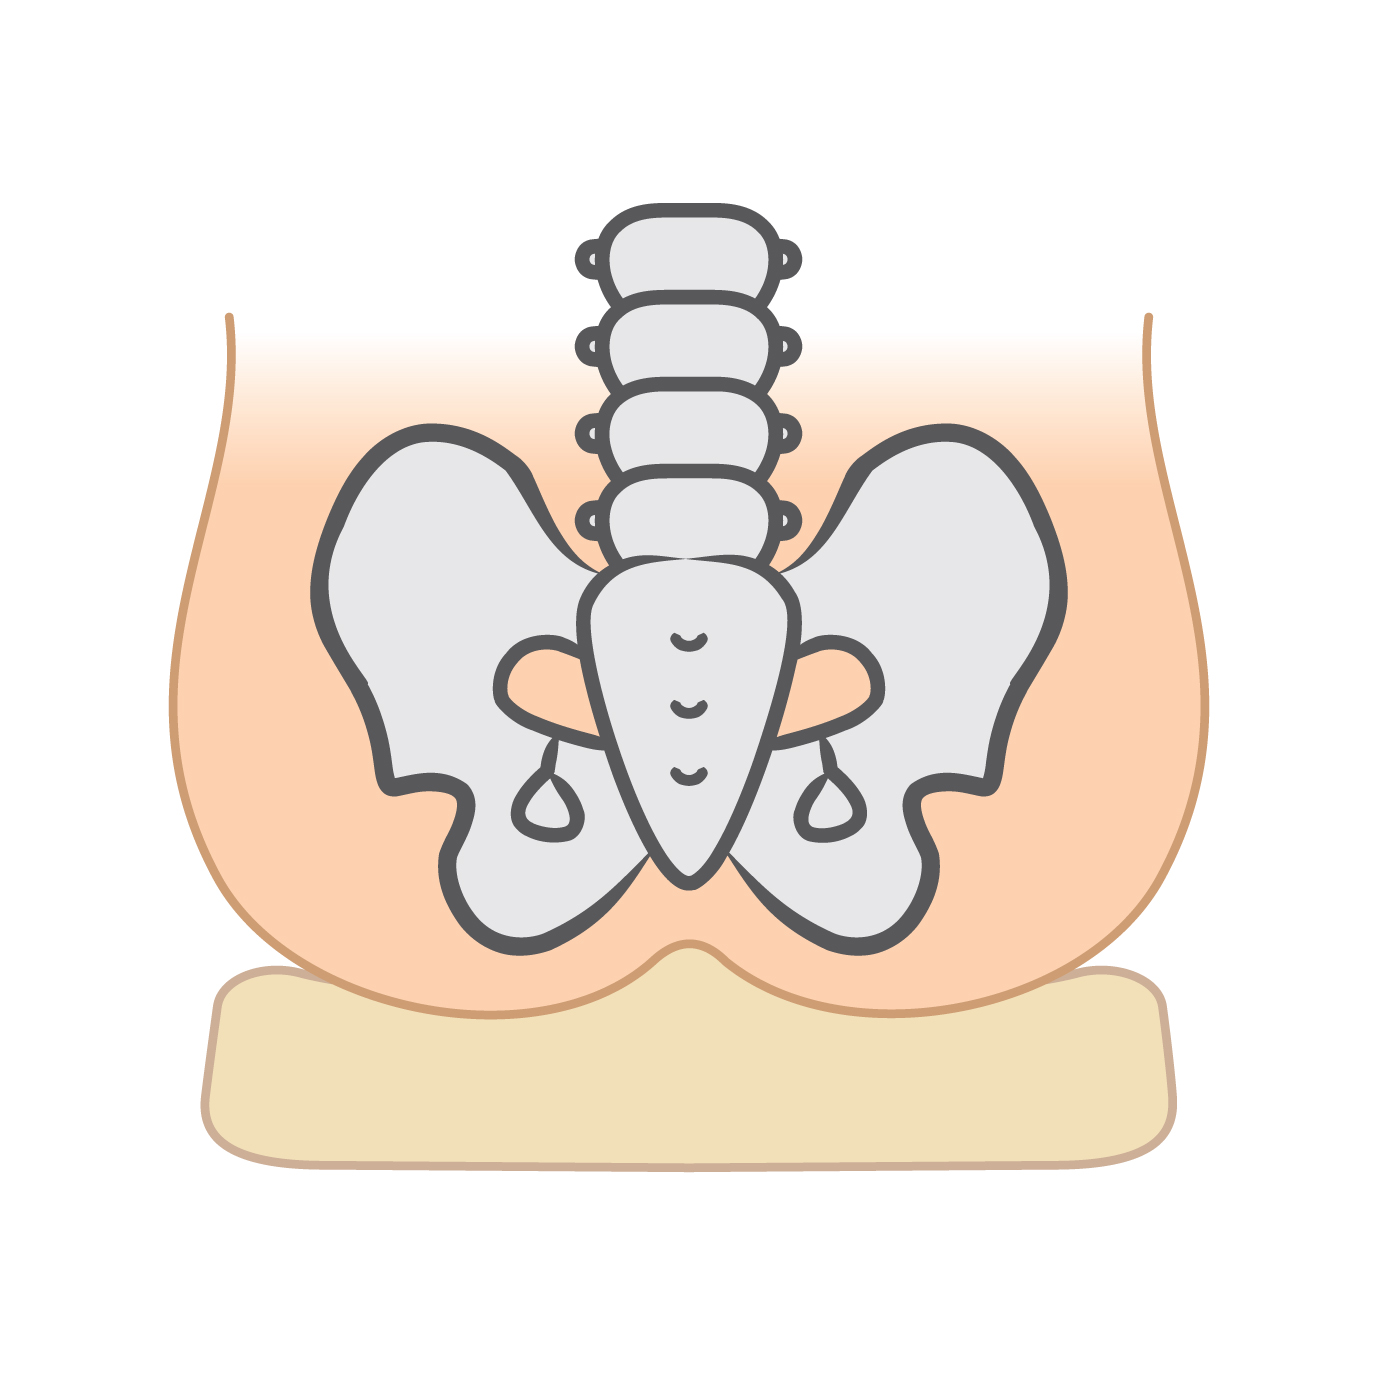 坐骨とクッションの中央部の盛り上がりが<br />
骨盤を安定させる→座姿勢がよくなる